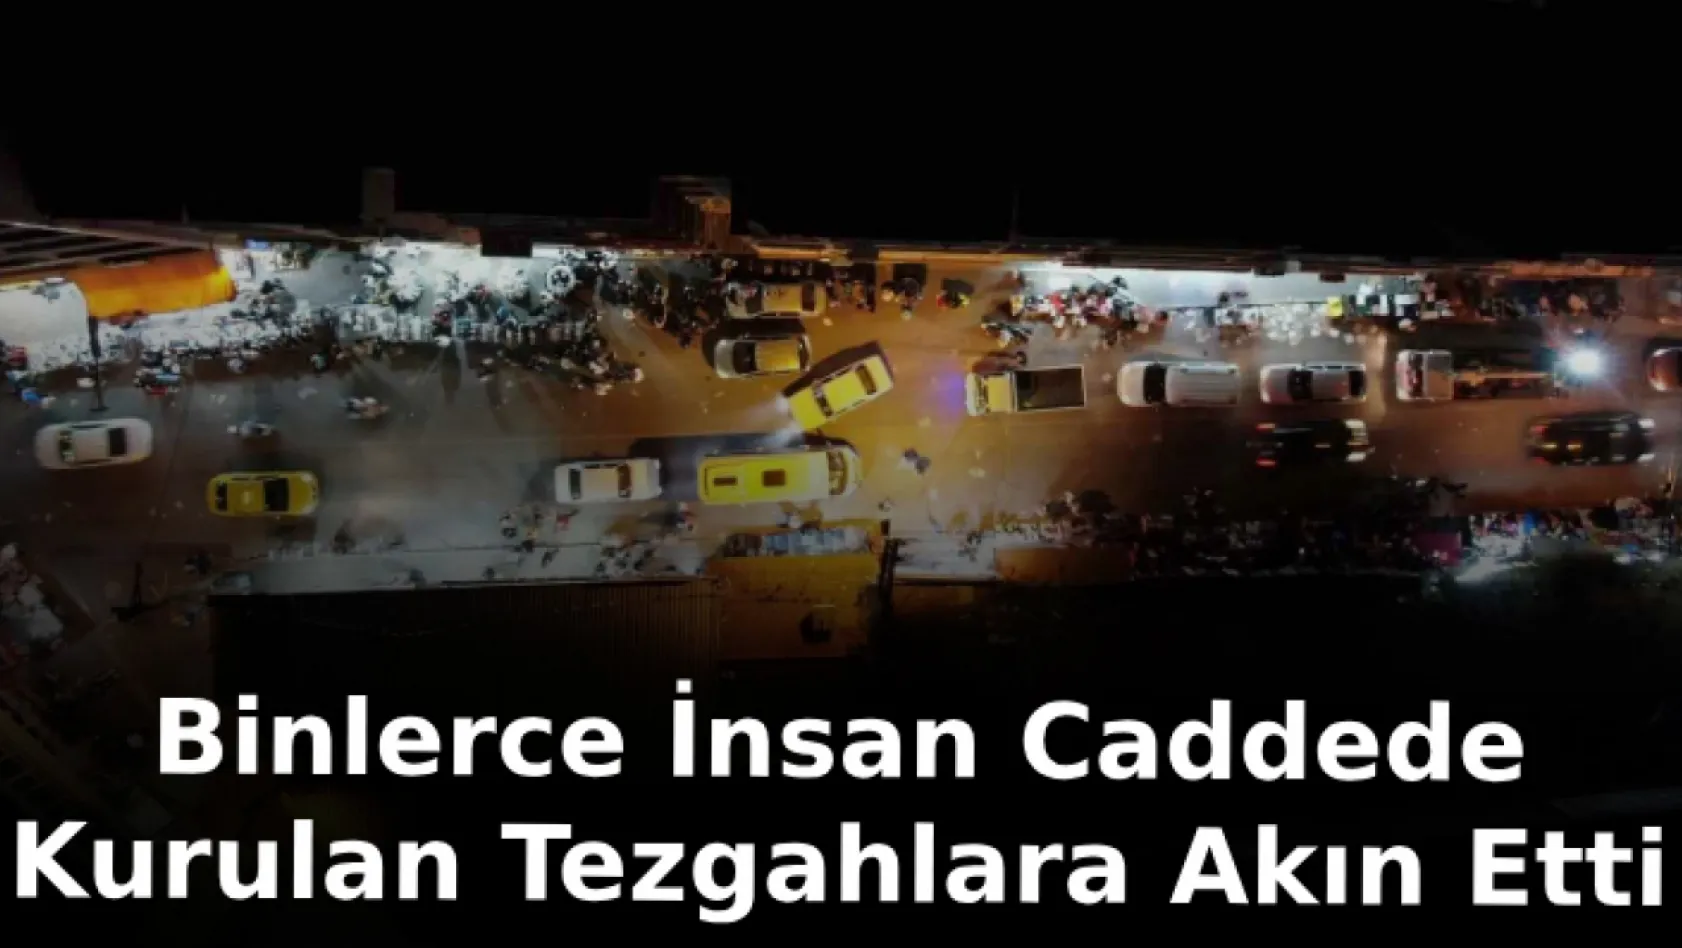 İzmir'de binlerce insan caddede kurulan tezgahlara akın etti